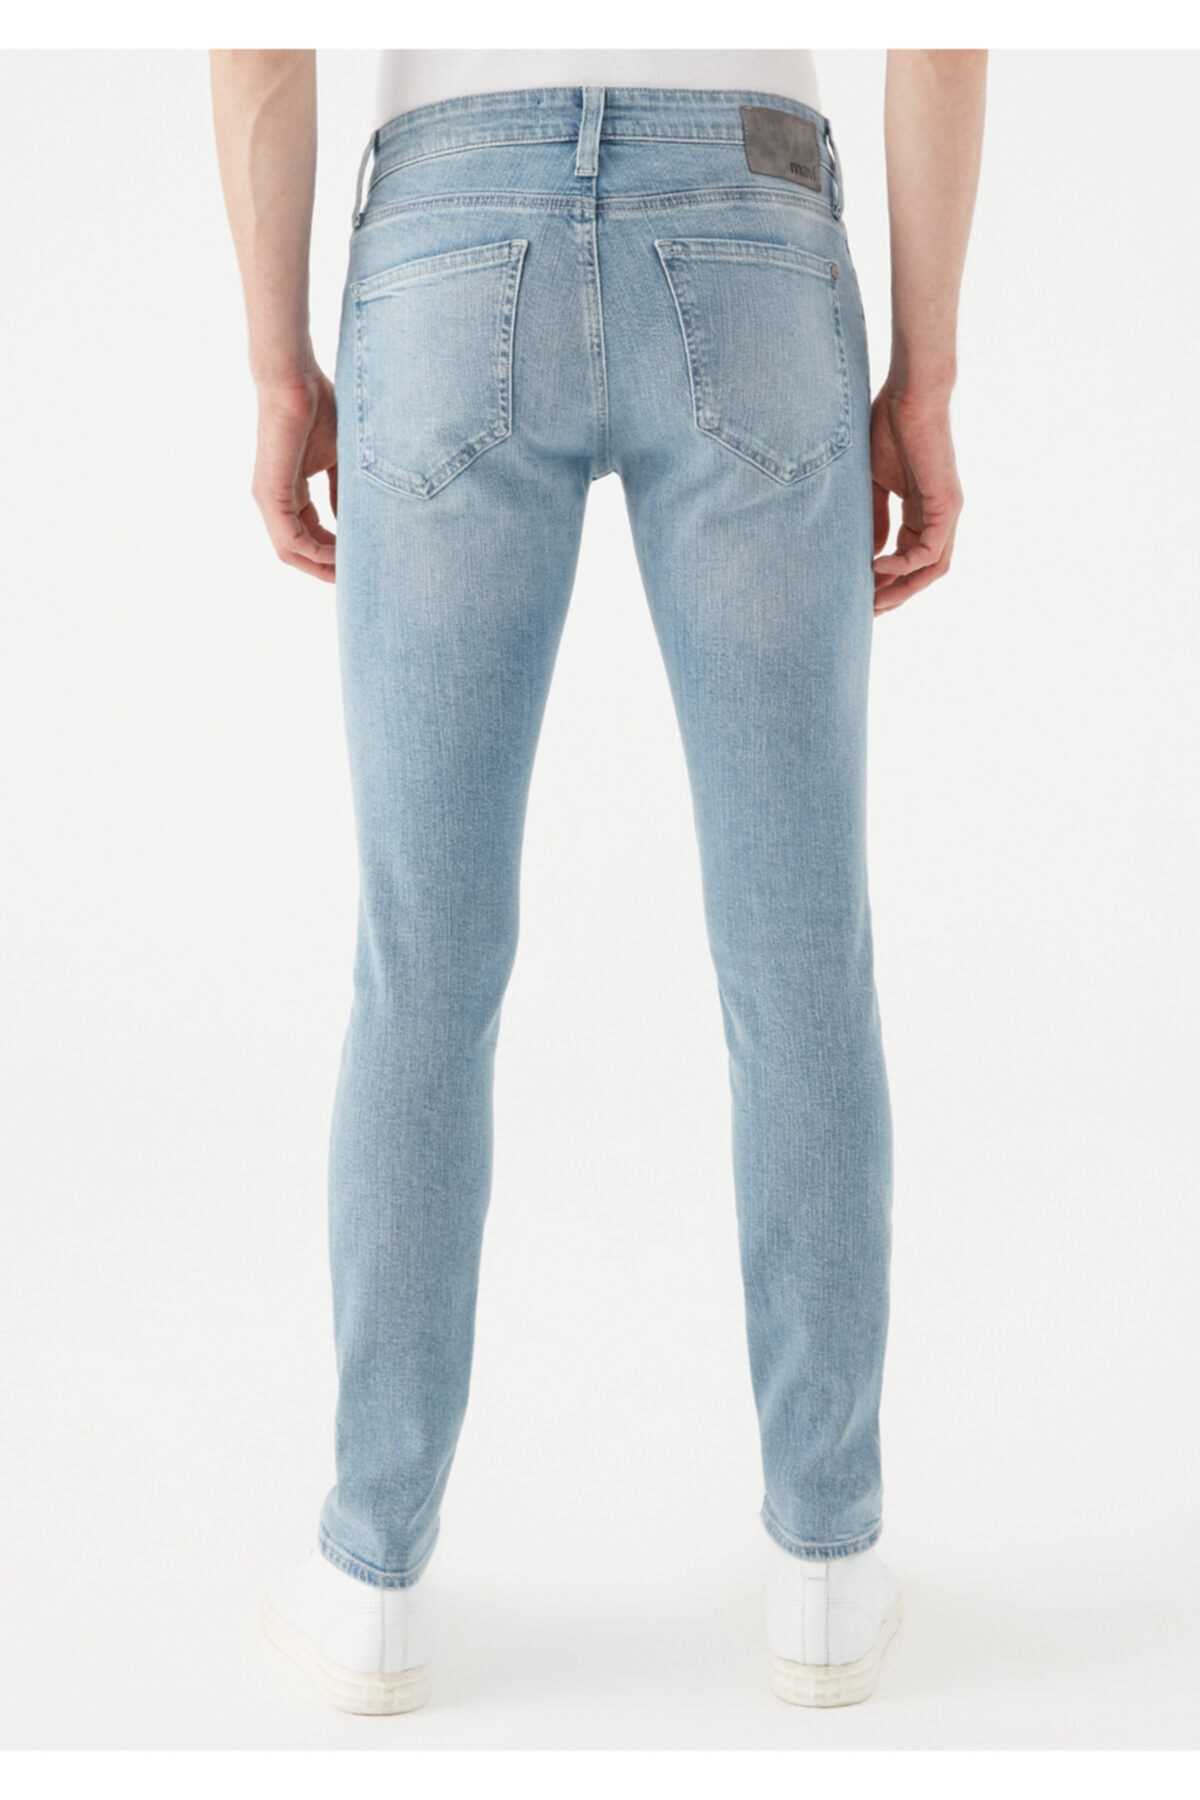 خرید نقدی شلوار جین مردانه فروشگاه اینترنتی برند ماوی رنگ آبی کد ty111216210